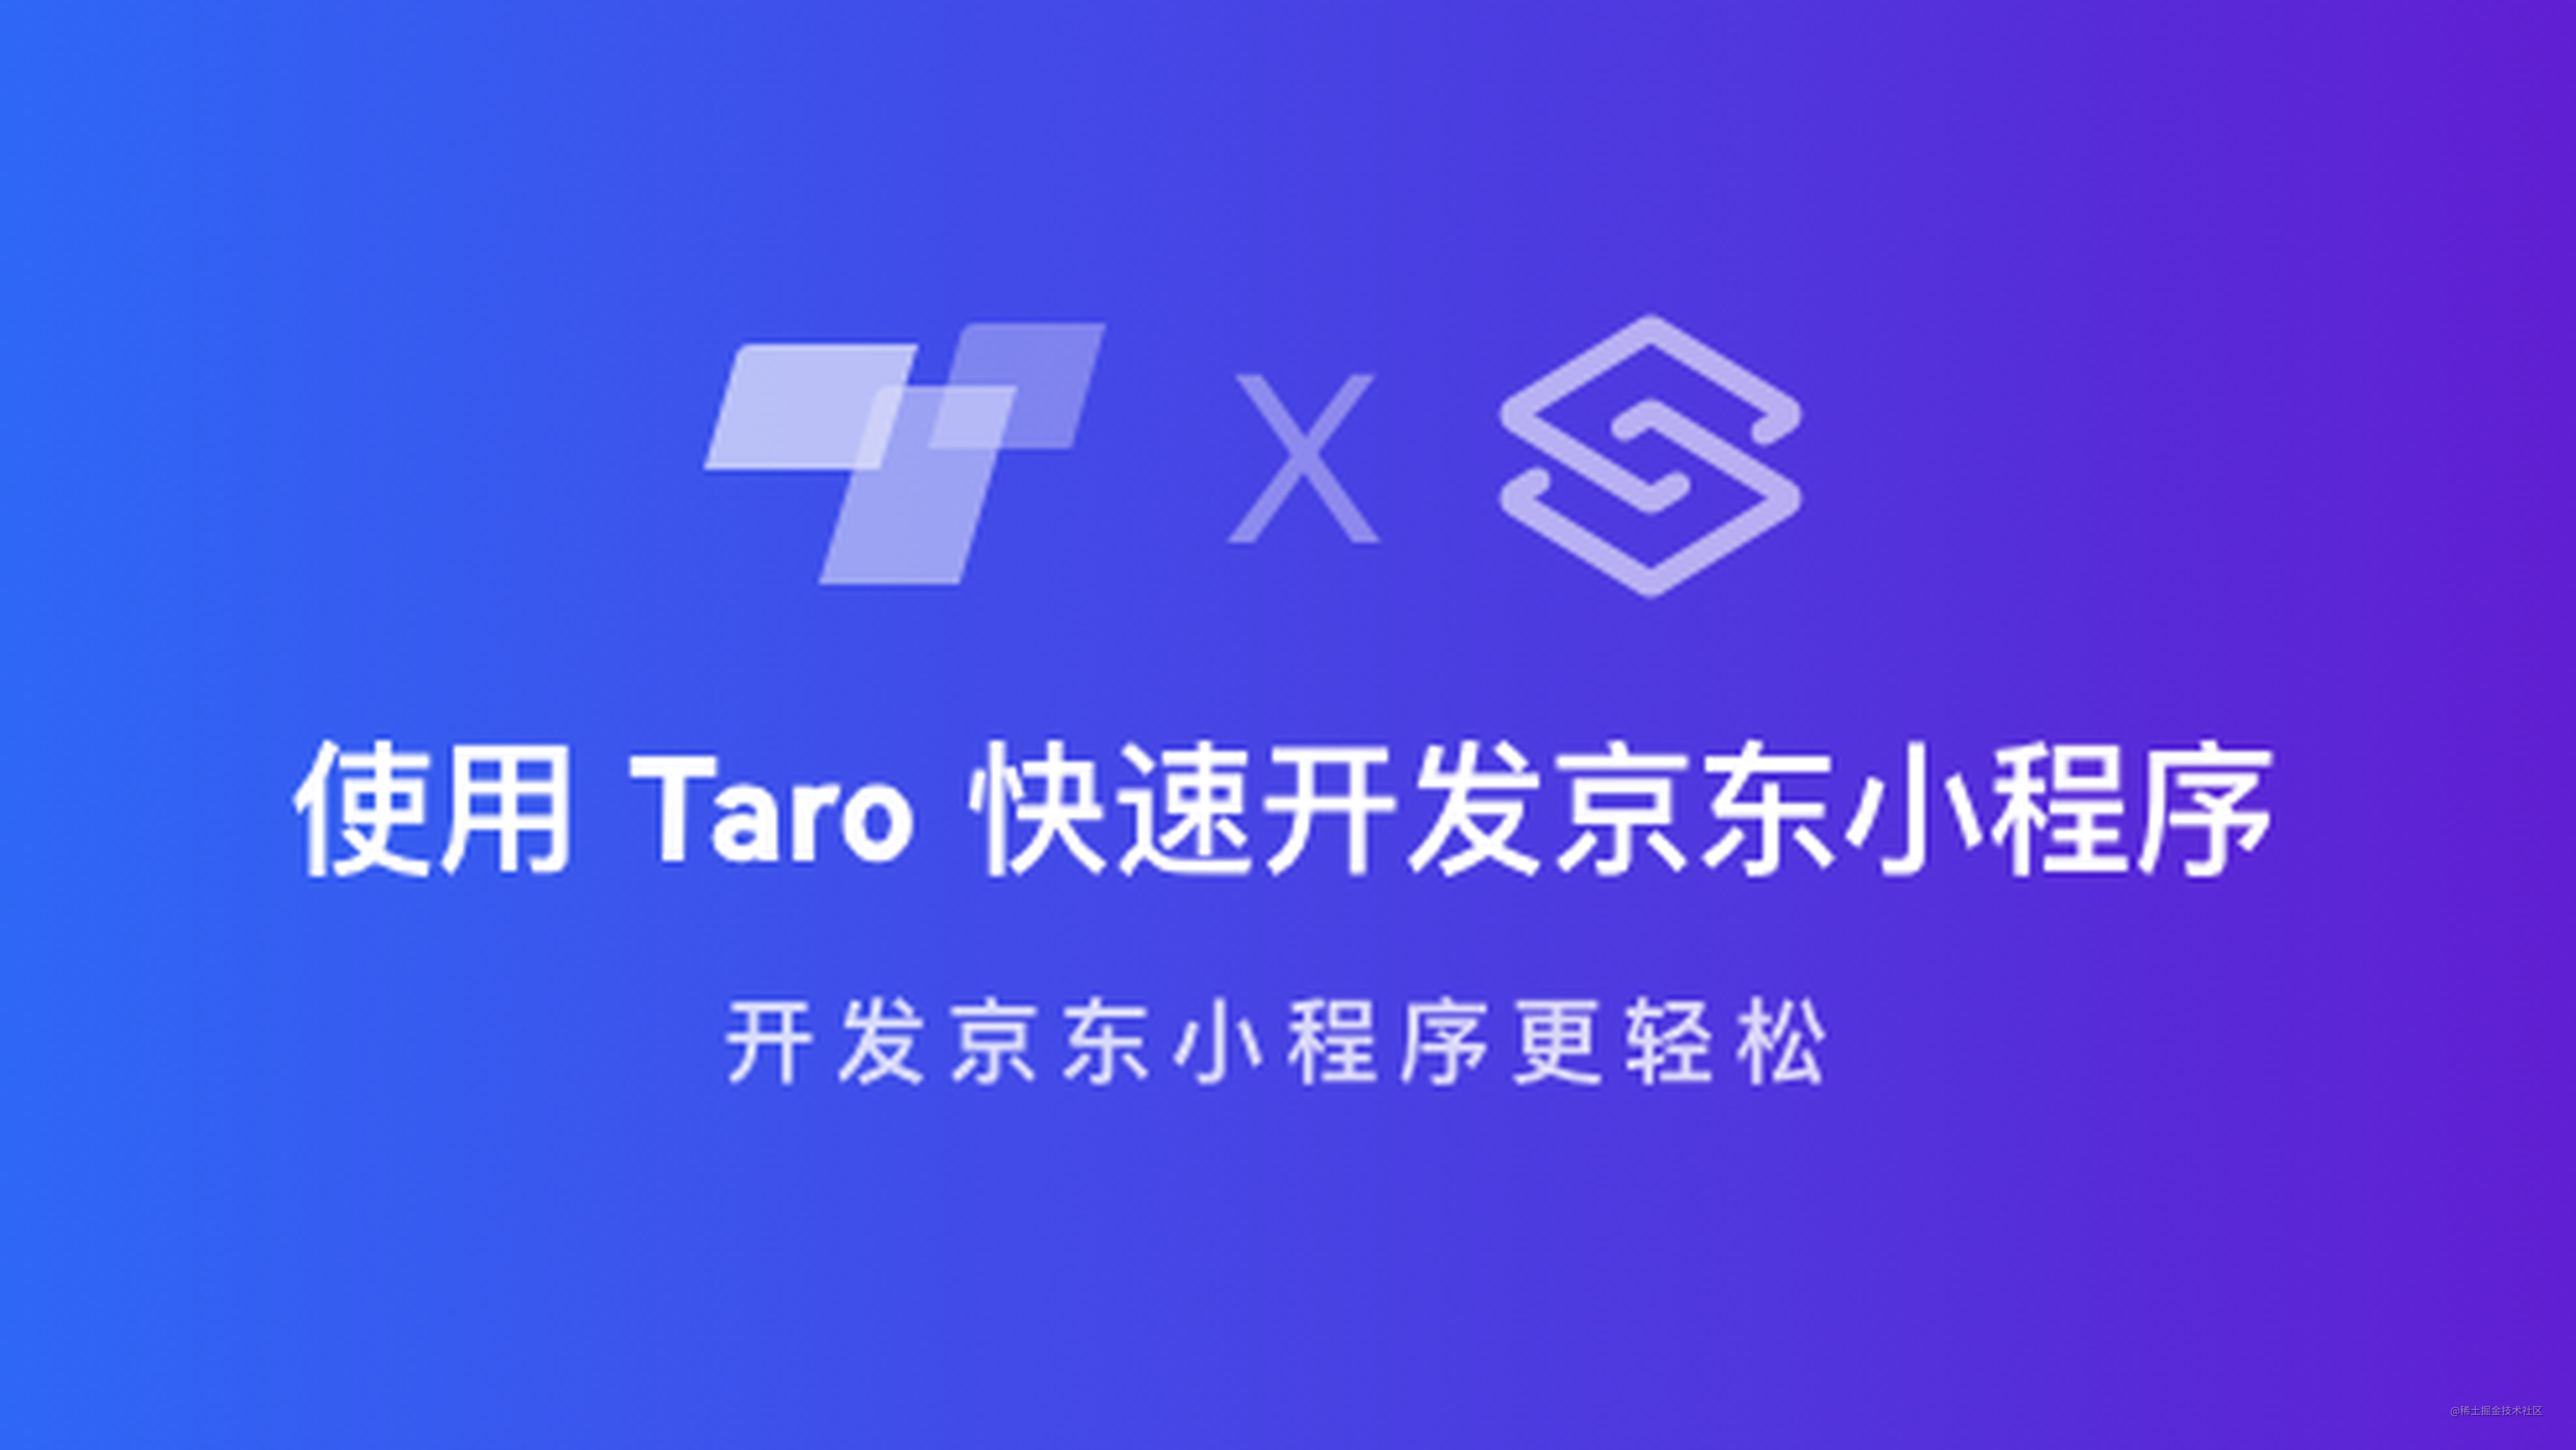 使用 Taro 的小伙伴们有福啦，快速开发京东小程序